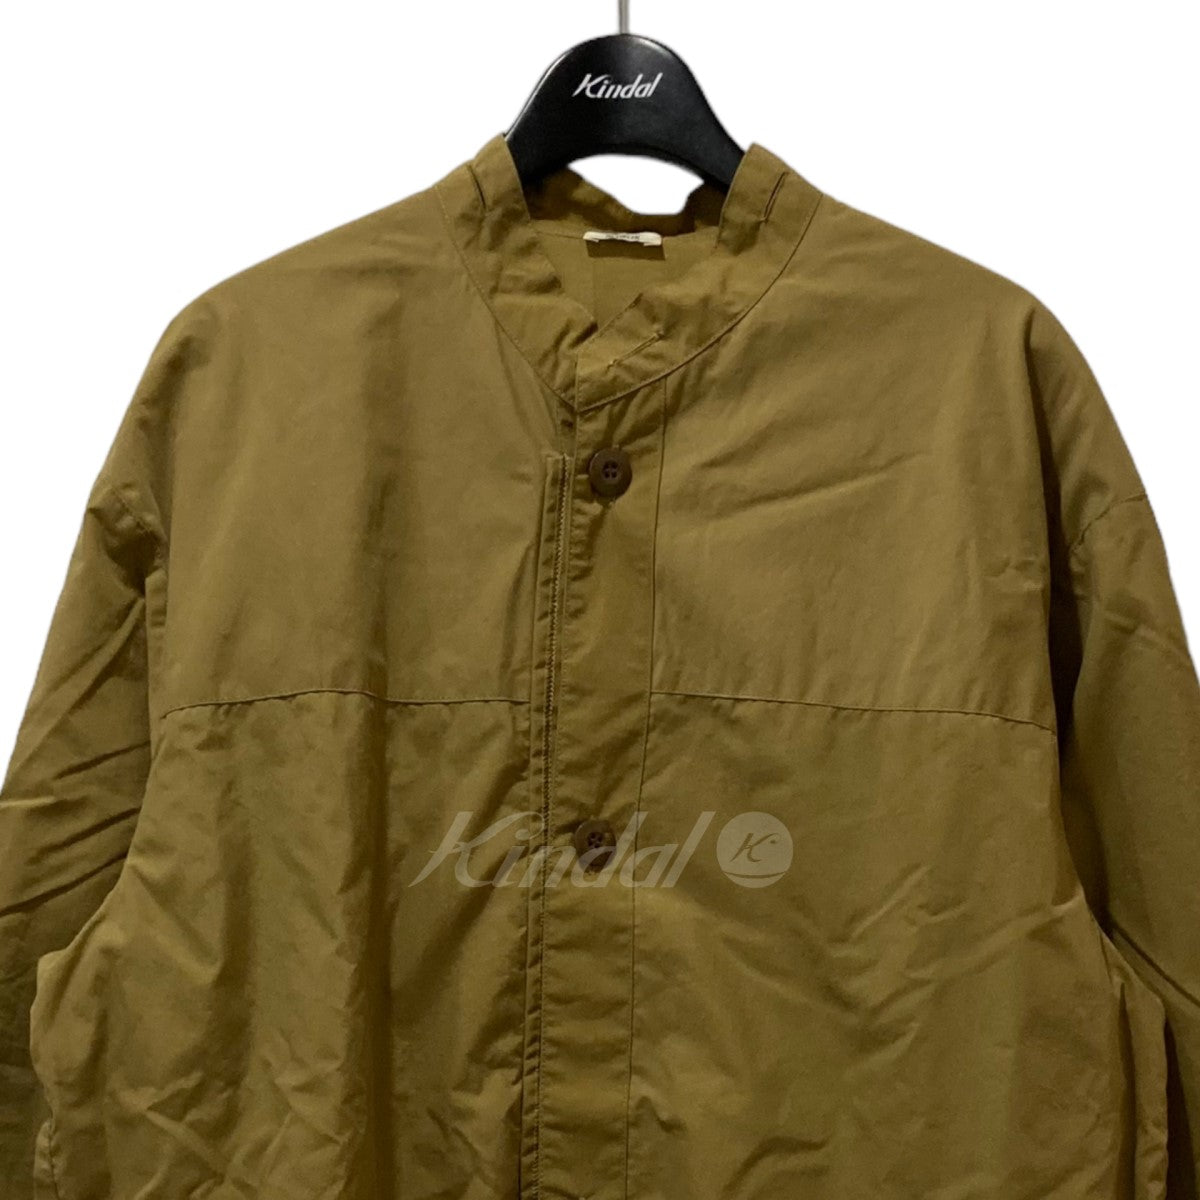 NOWOS(ノーウォス) nylon jacket ナイロンジャケット 5508005628